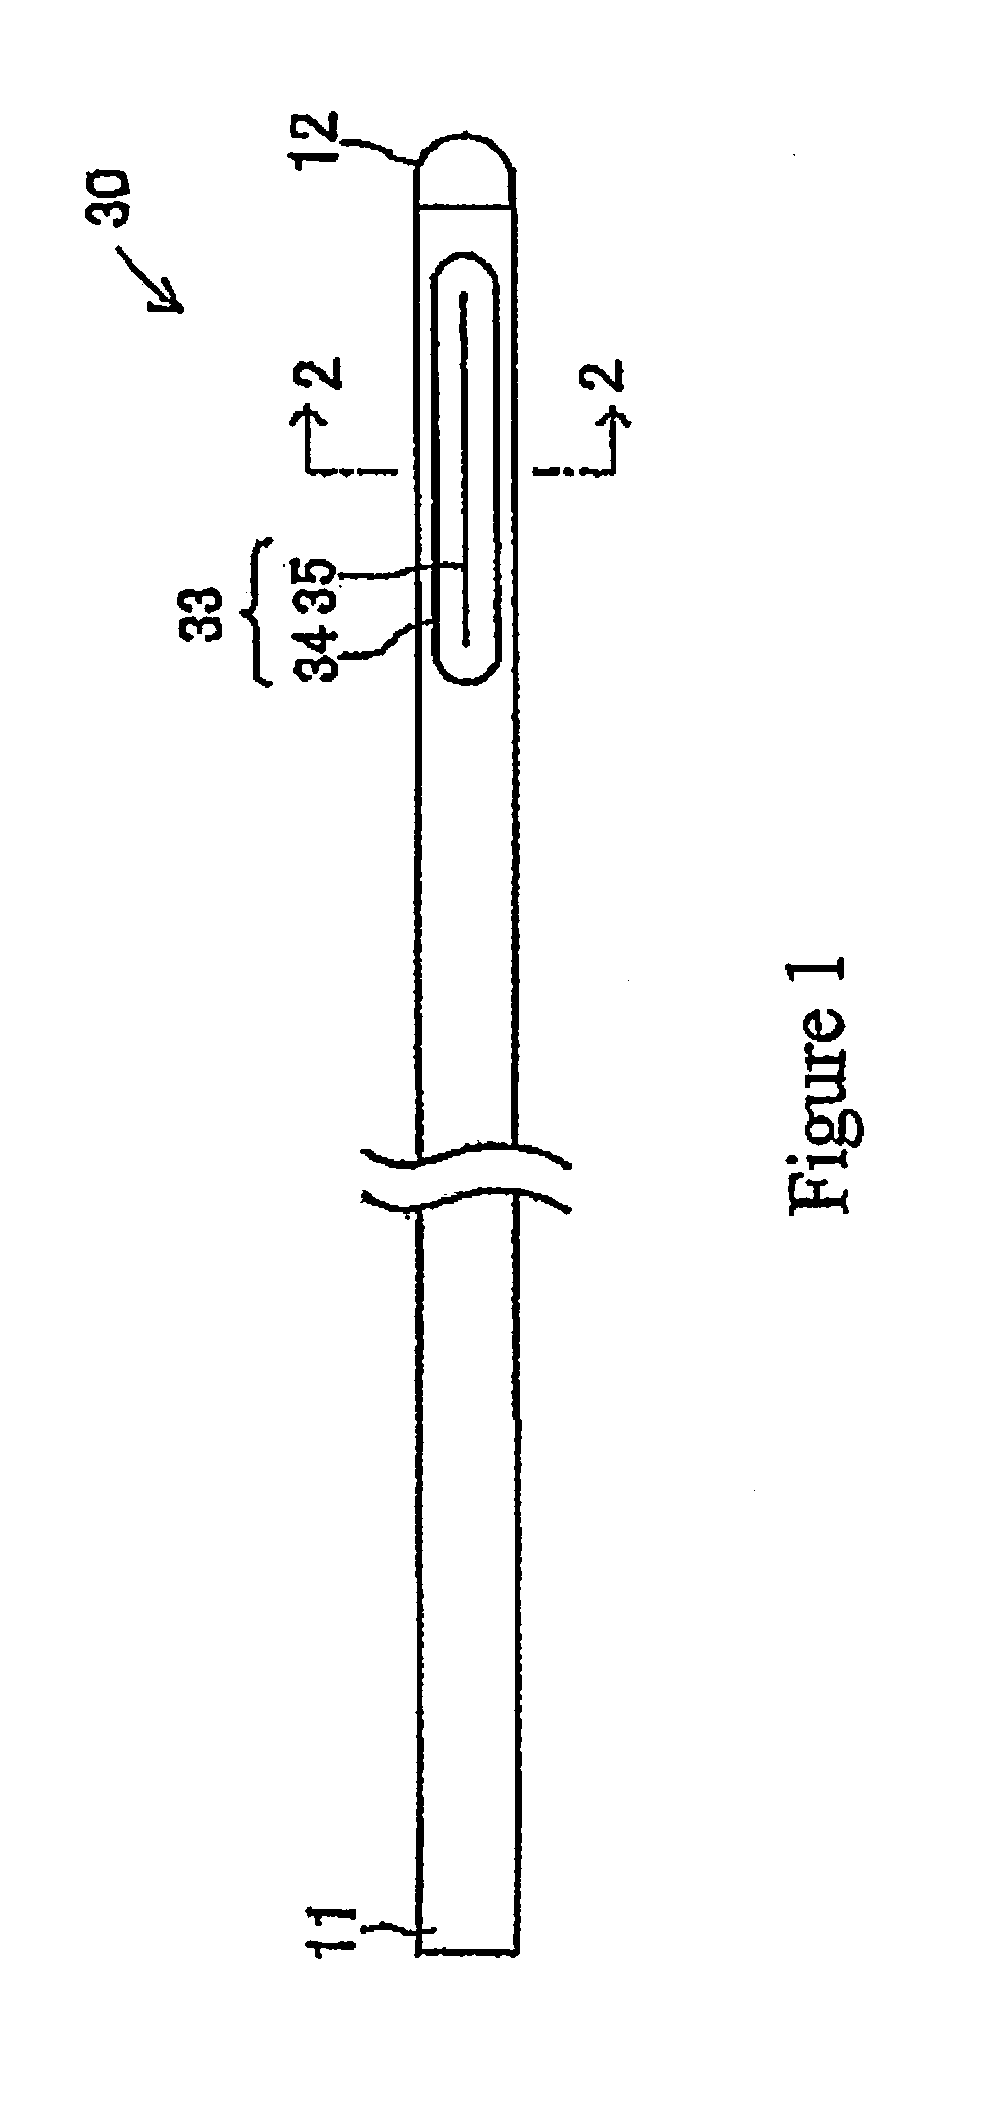 Catheter with valve